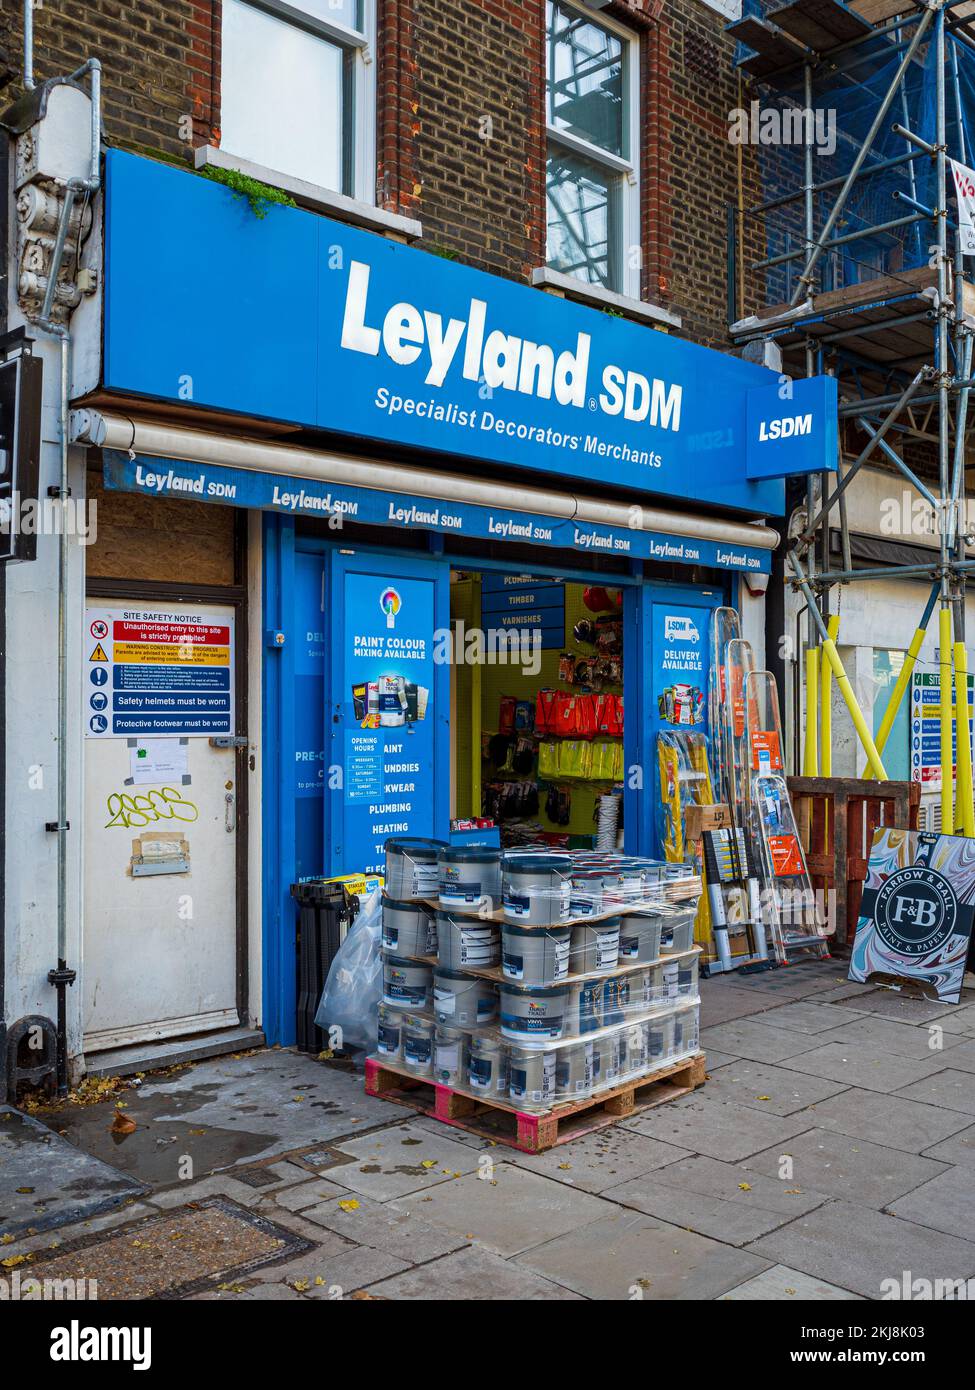 Leyland SDM magasin de bricolage et de décoration dans le centre de Londres. Leyland Spécialiste Décorateurs magasin marchand à Londres. Banque D'Images